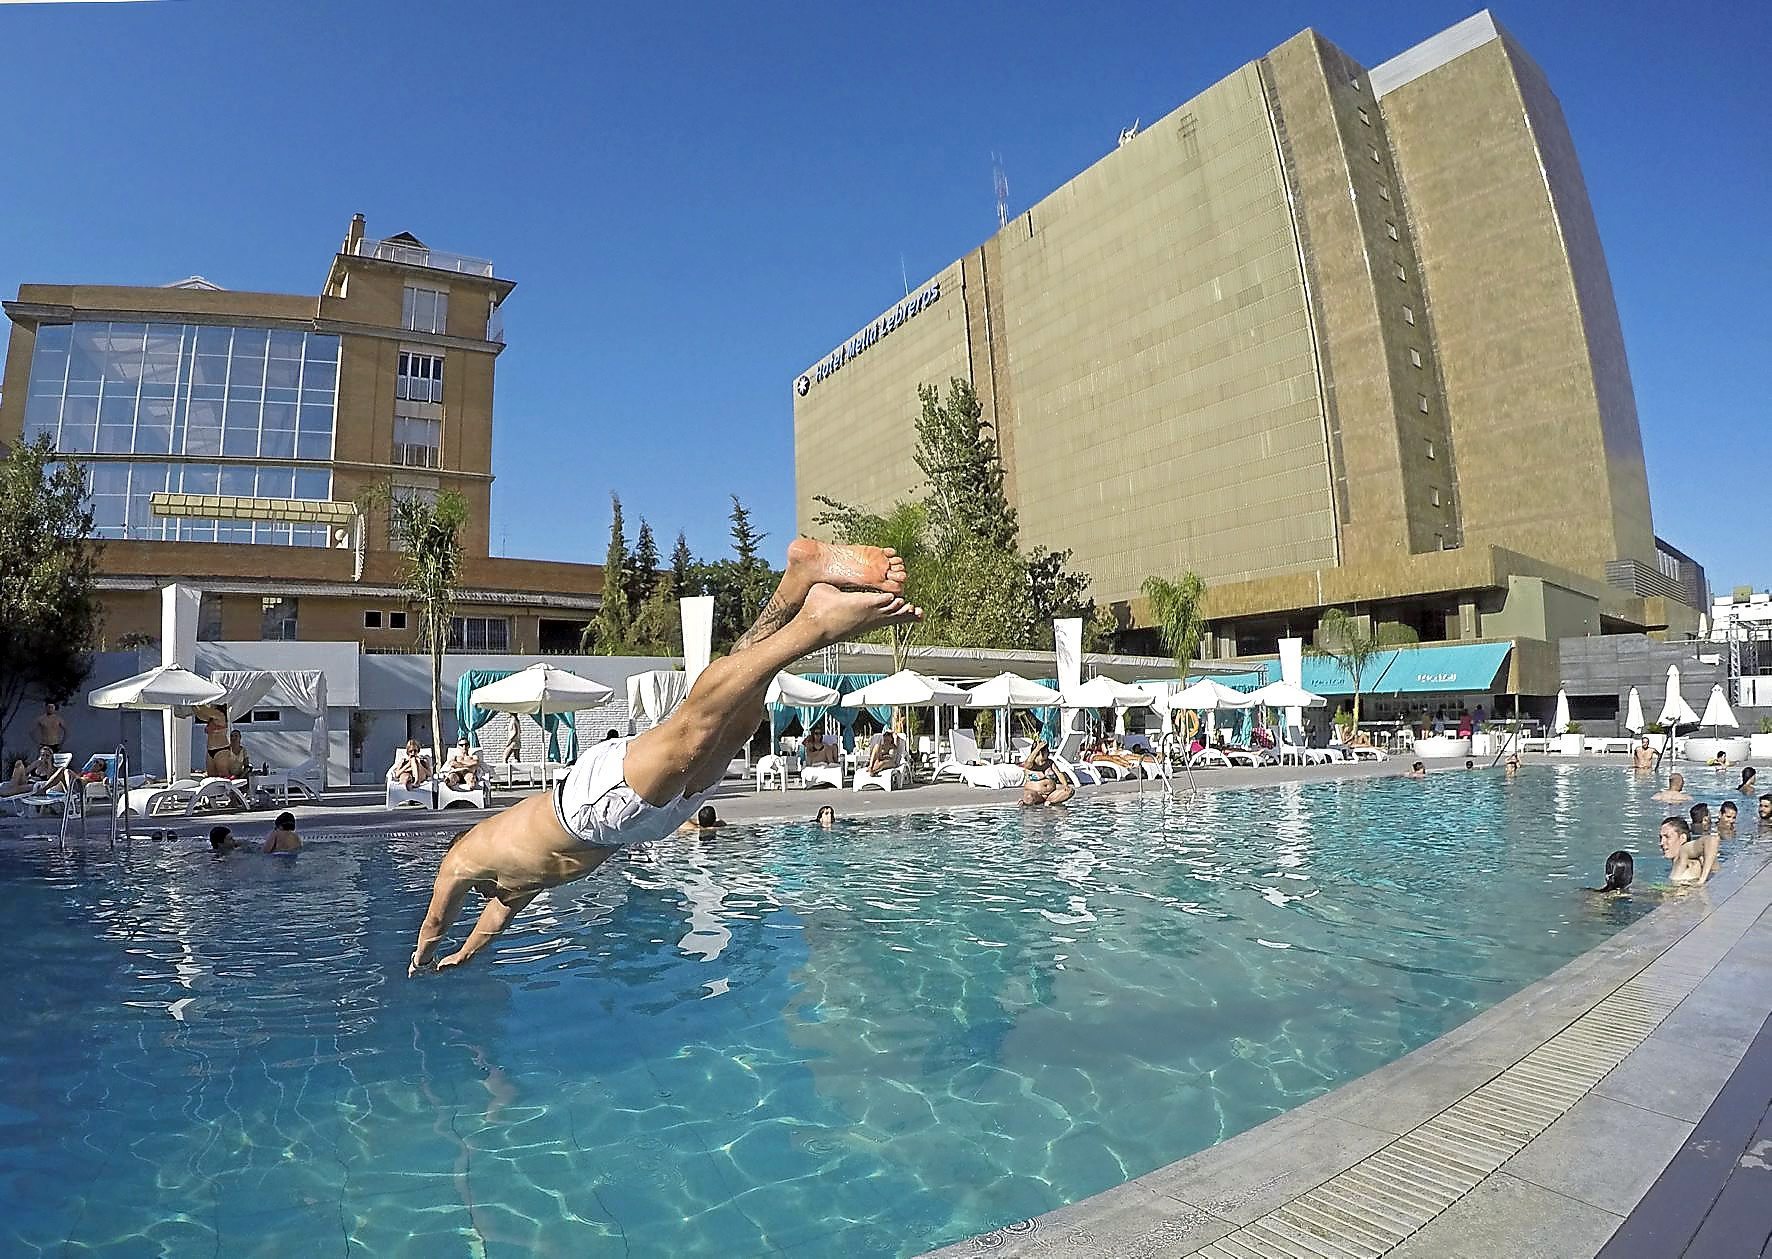 Un usuario se zambulle en la piscina de un hotel en Sevilla.